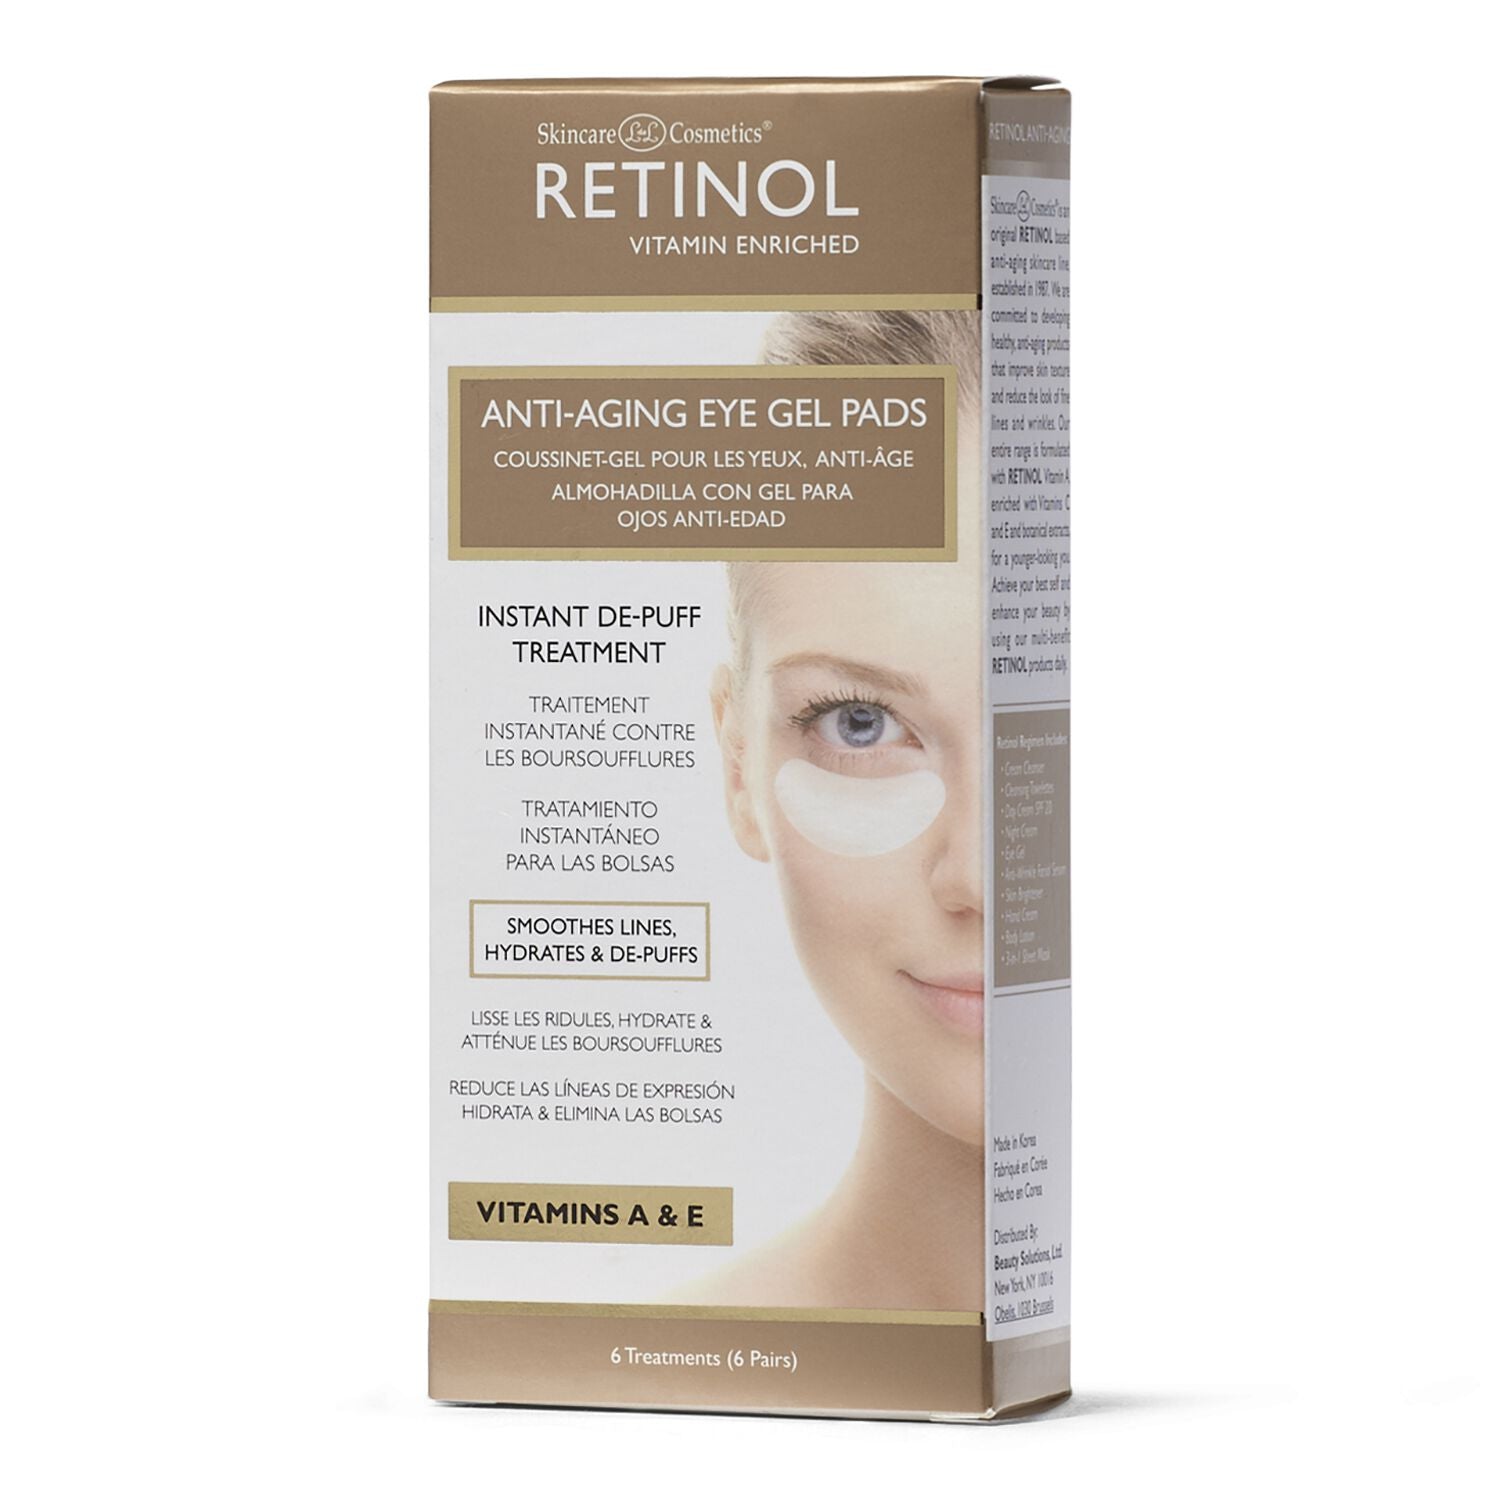 Retinol Anti-Aging Eye Gel Pads